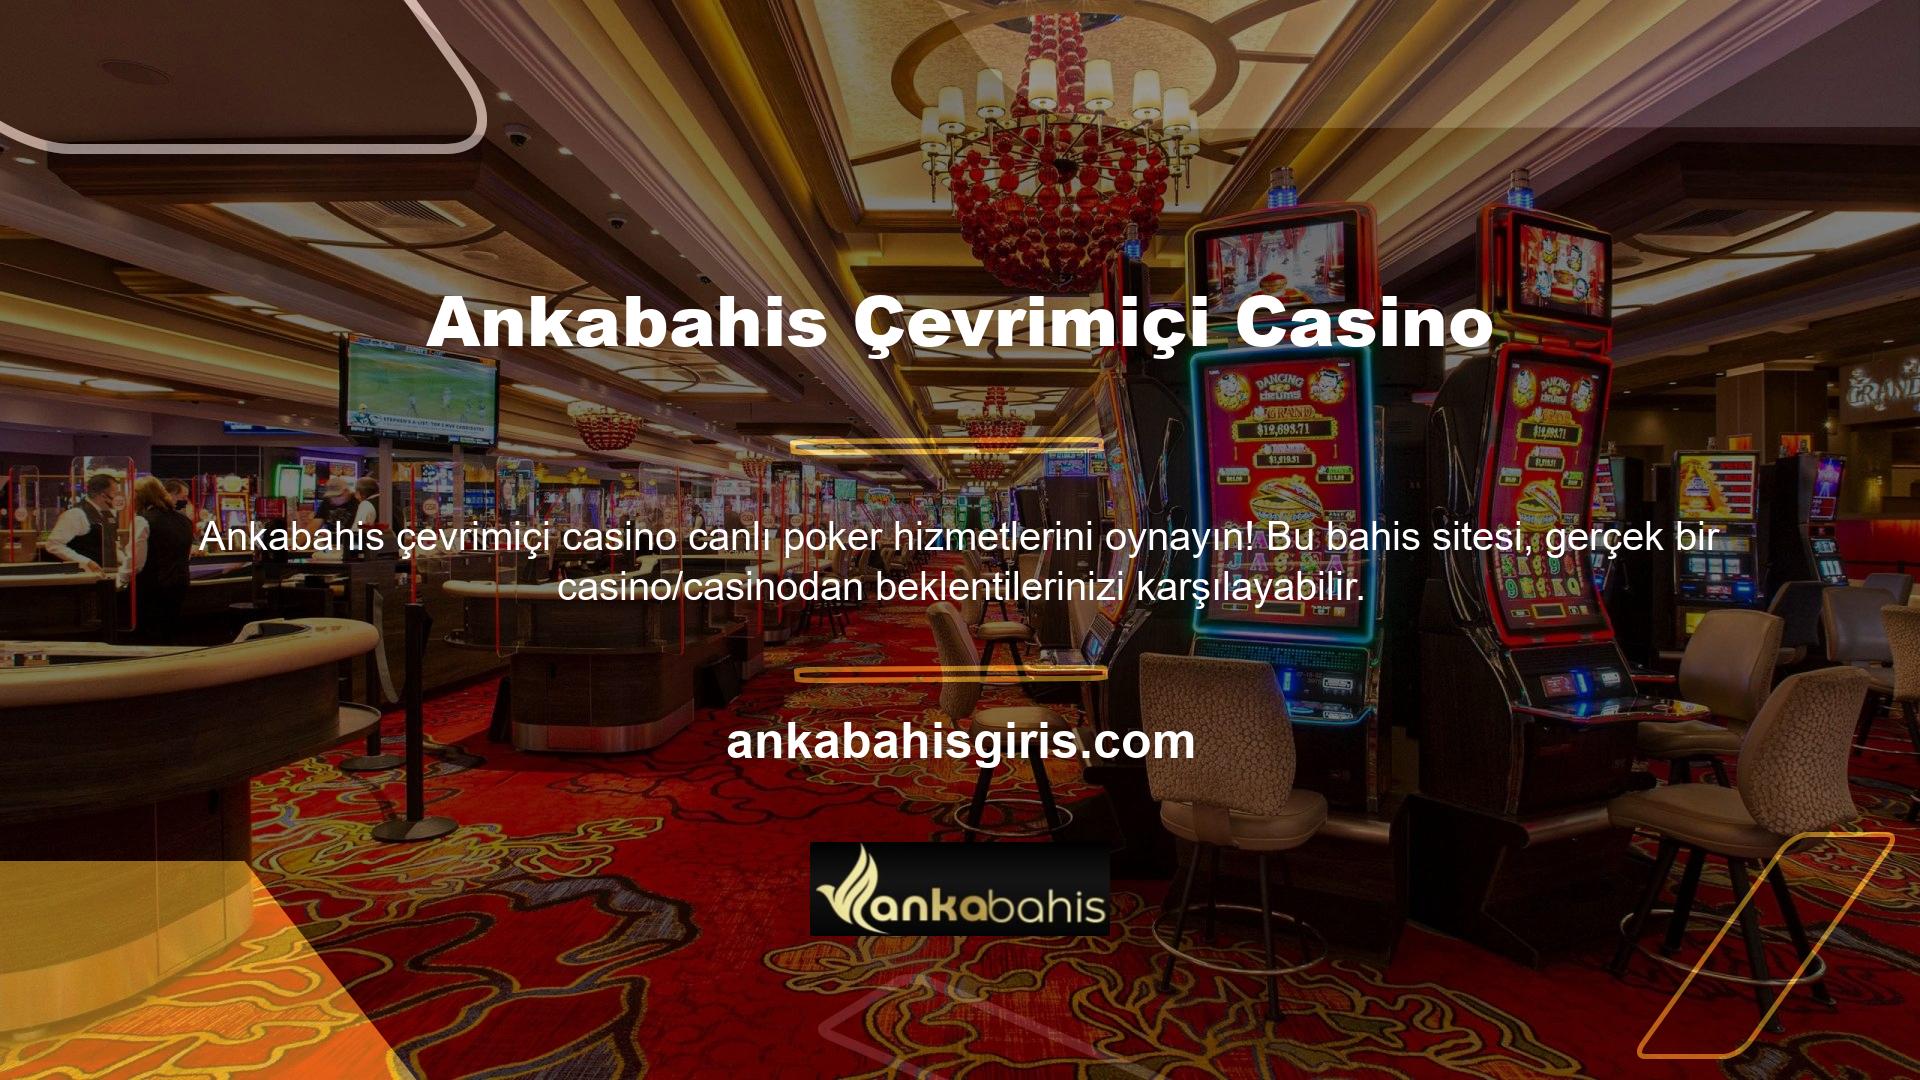 Profesyonel casino krupiyeleriyle canlı poker oyunları oynamanın otantik atmosferine dalın